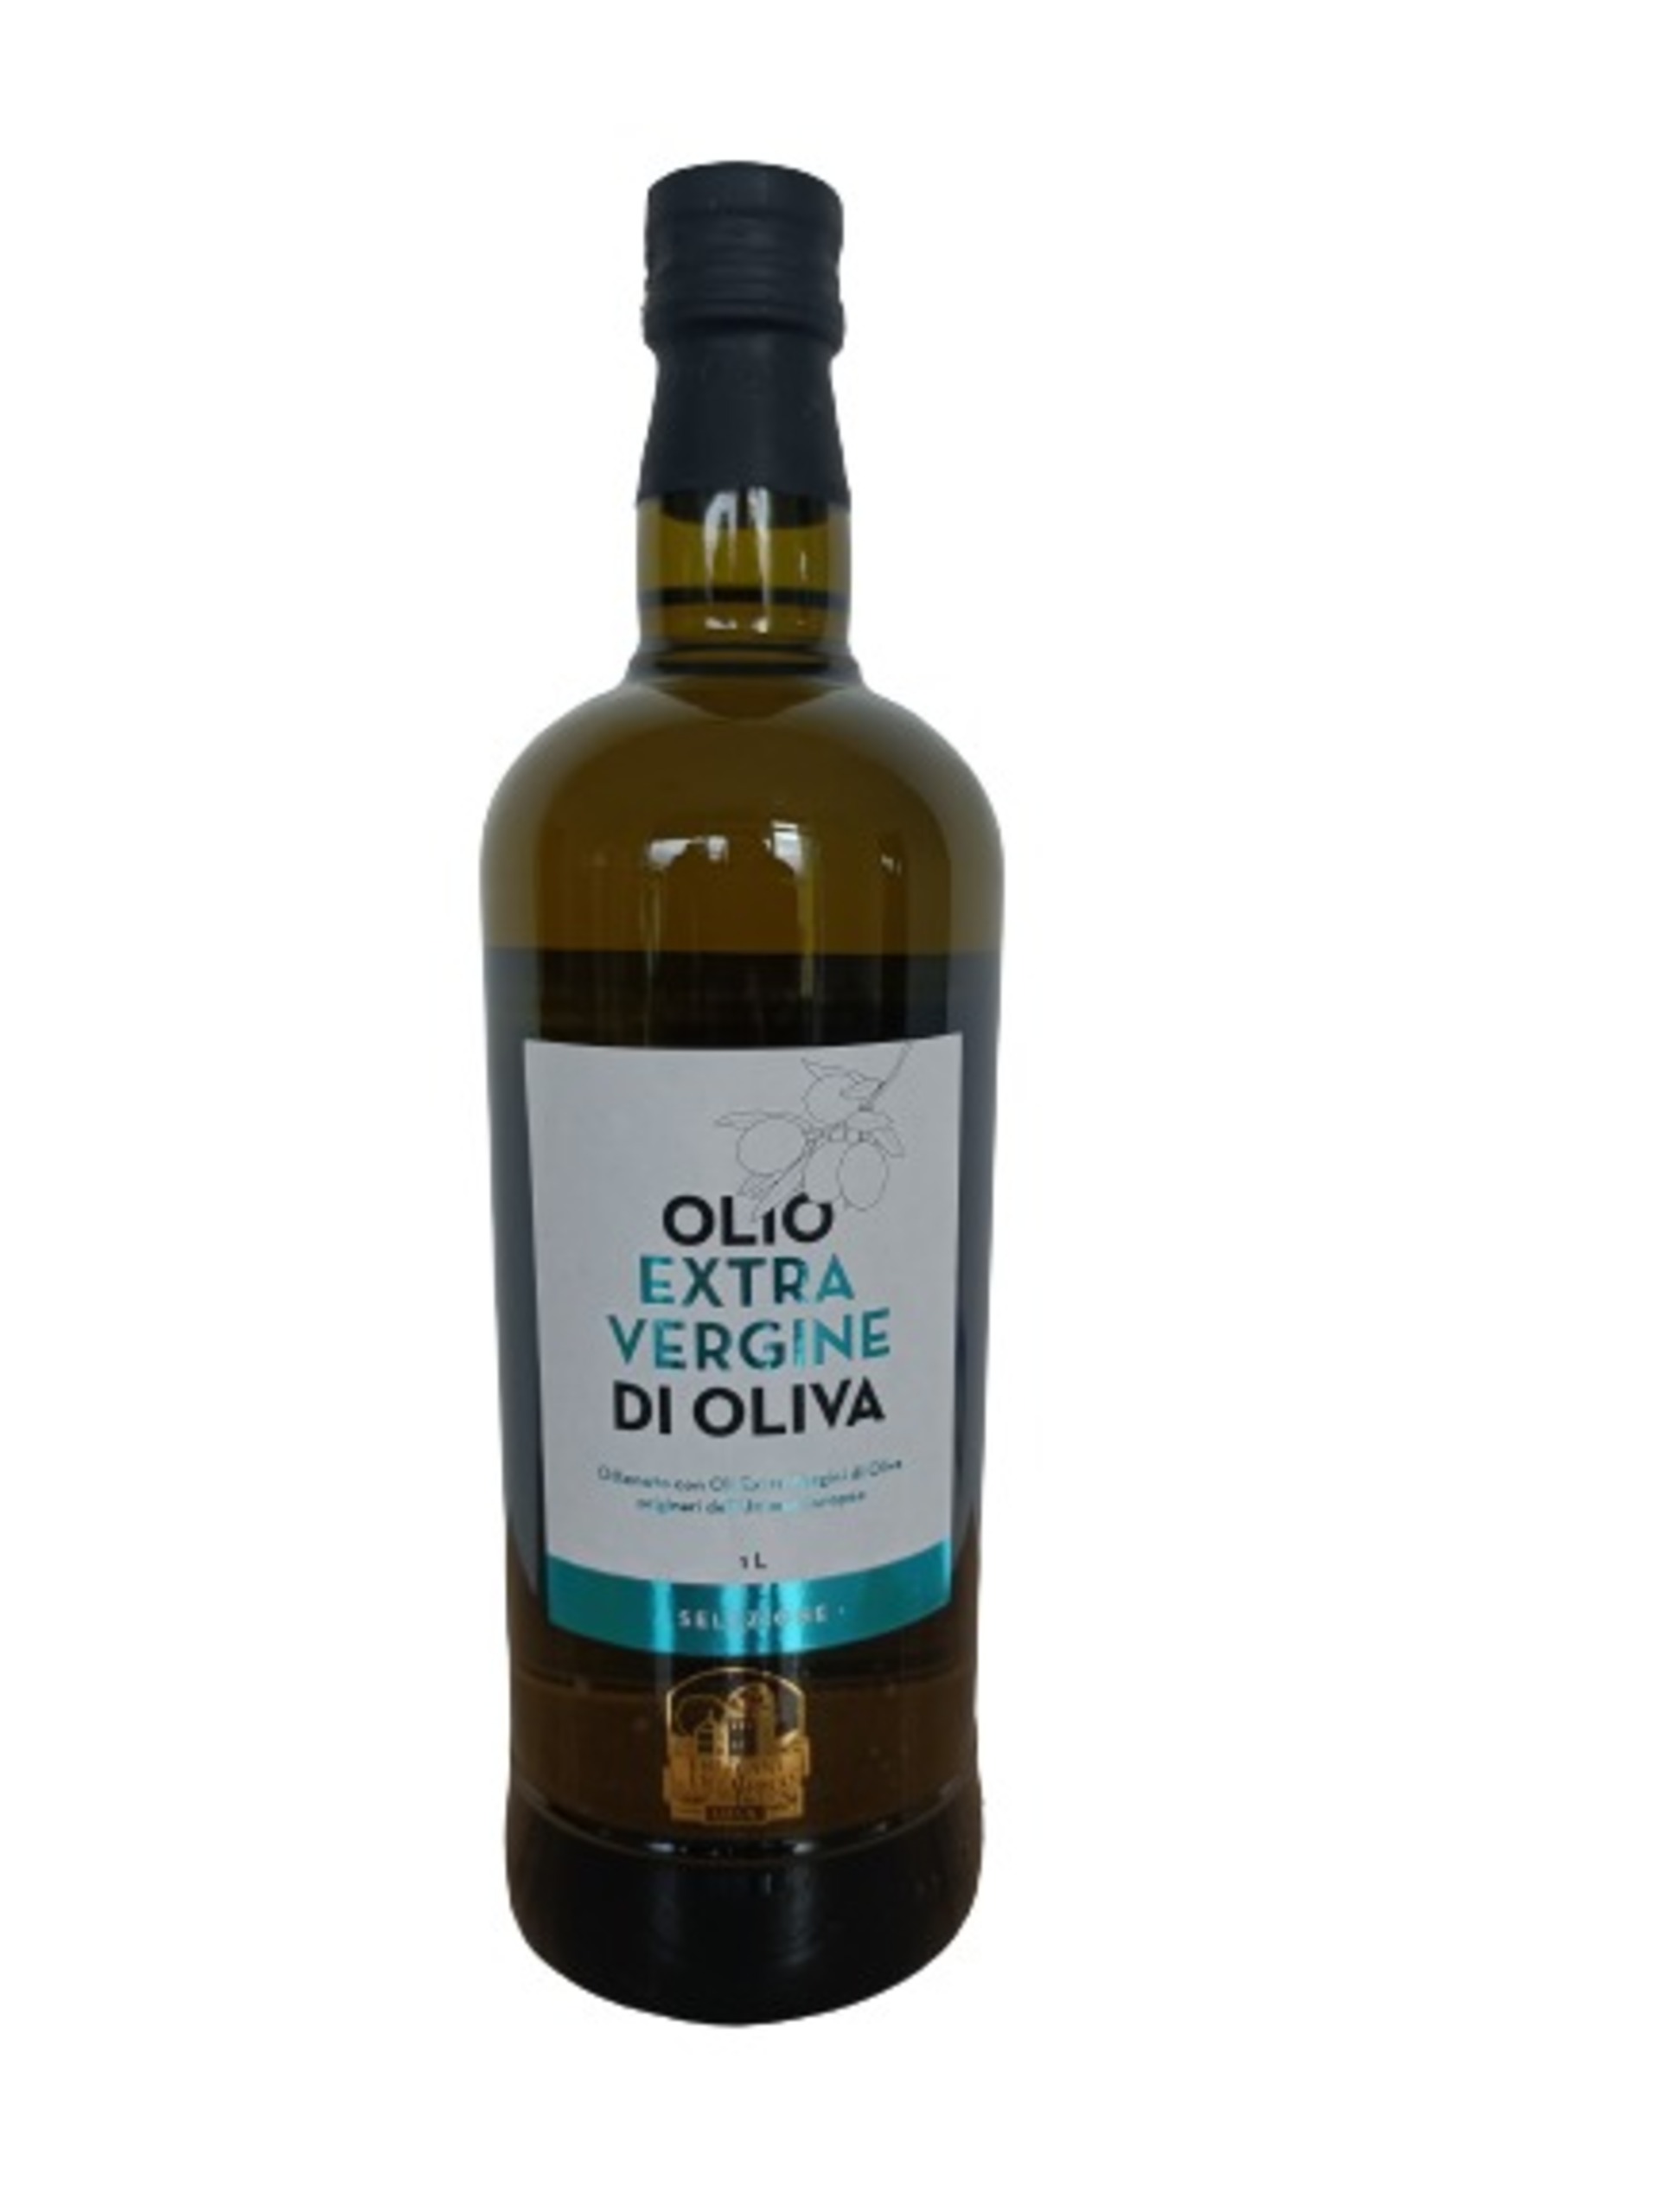 Frediani & Del Greco Extra Virgin Olive Oil 1l EU